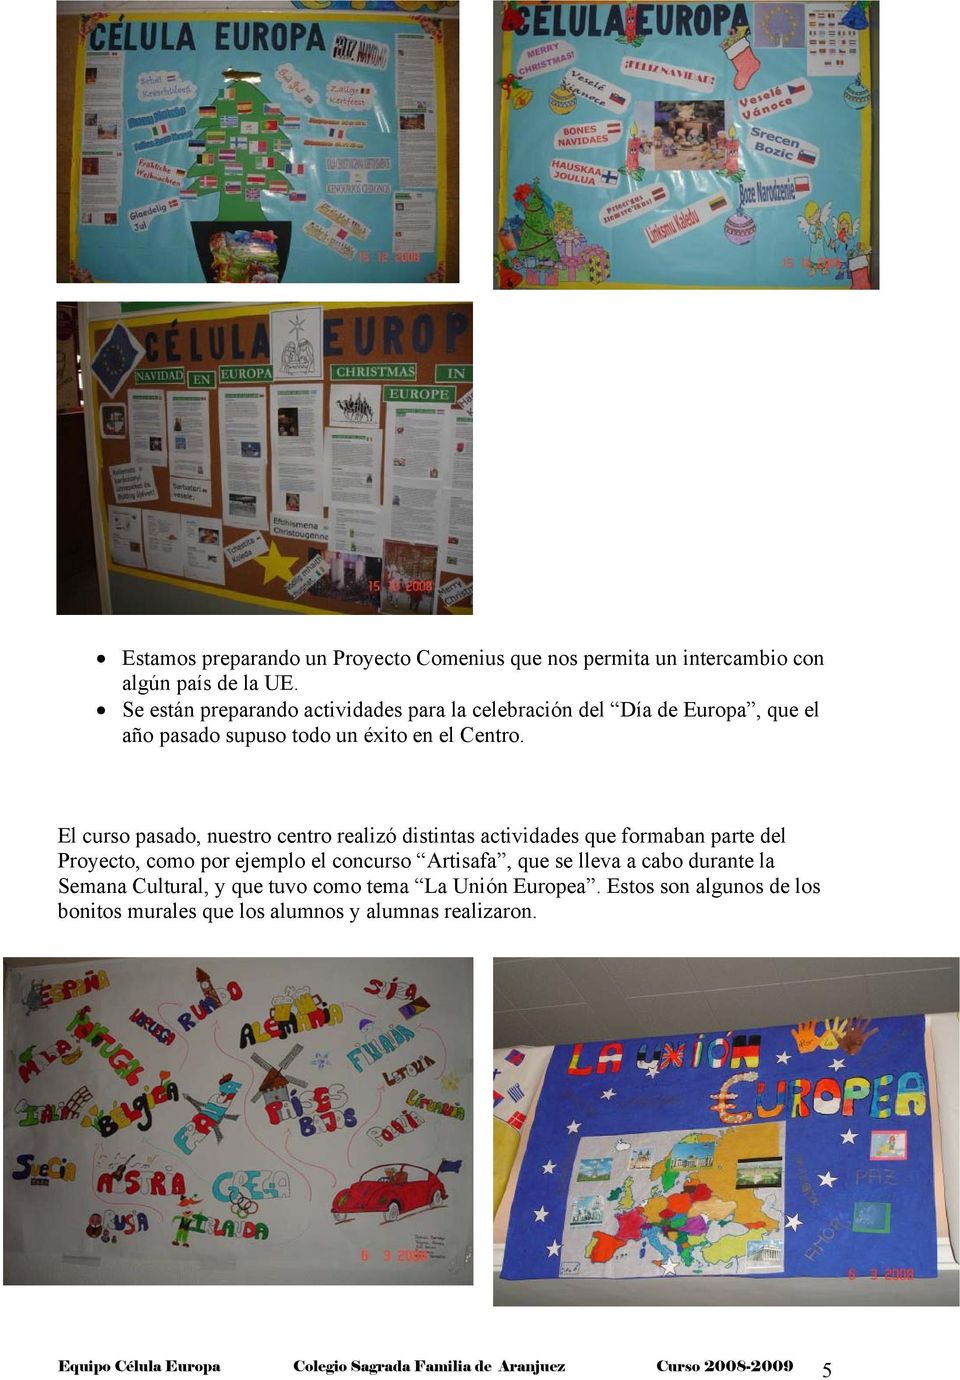 El curso pasado, nuestro centro realizó distintas actividades que formaban parte del Proyecto, como por ejemplo el concurso